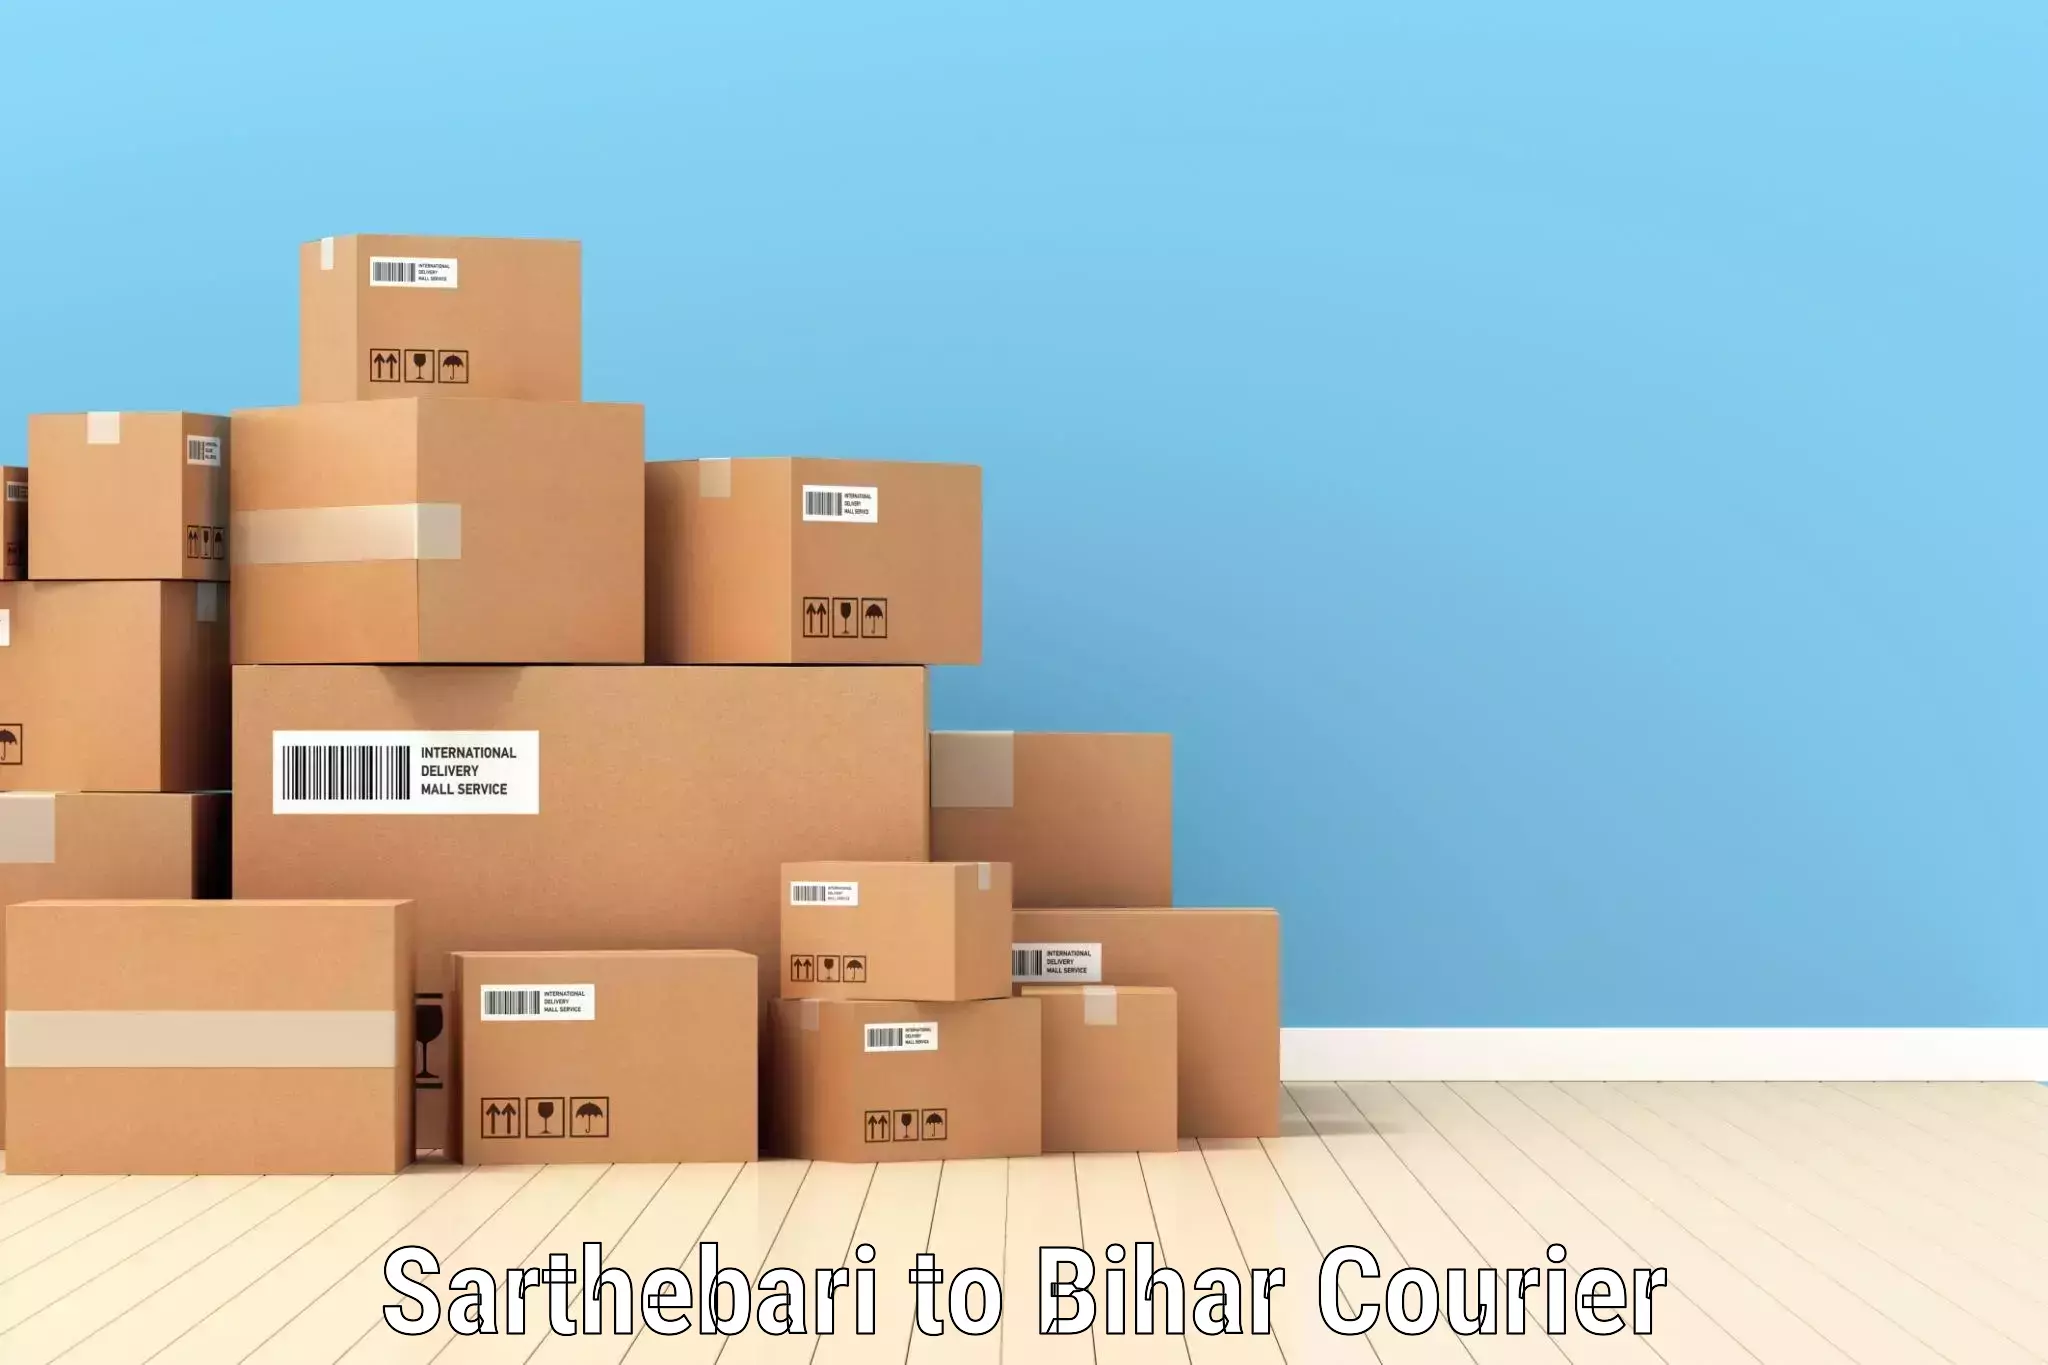 Large package courier Sarthebari to Simri Bakthiyarpur